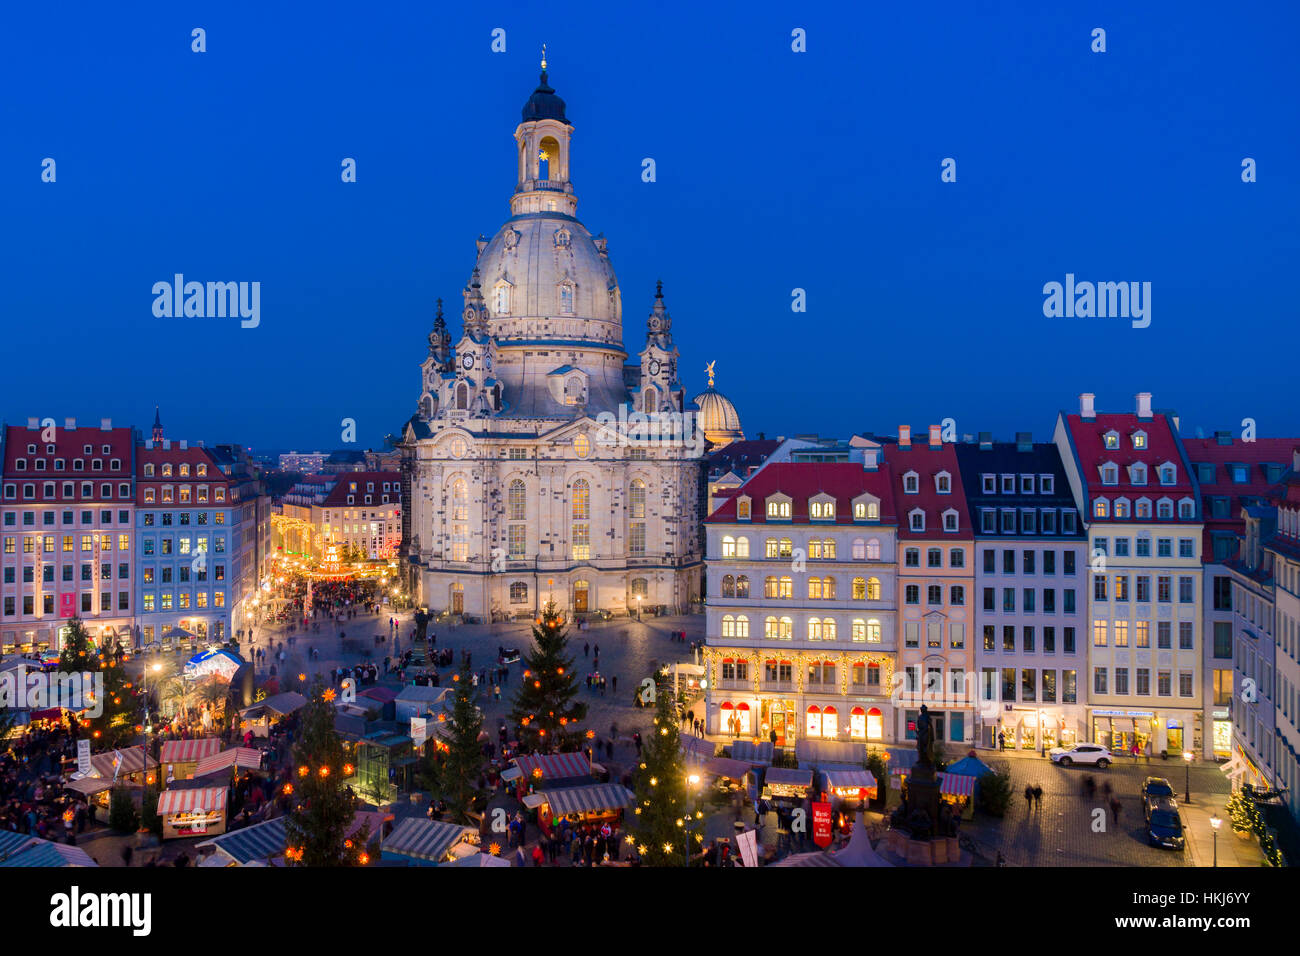 Im Stil der Renaissance historischer Weihnachtsmarkt am Neumarkt gegenüber der Frauenkirche, Dresden, Sachsen, Deutschland Stockfoto